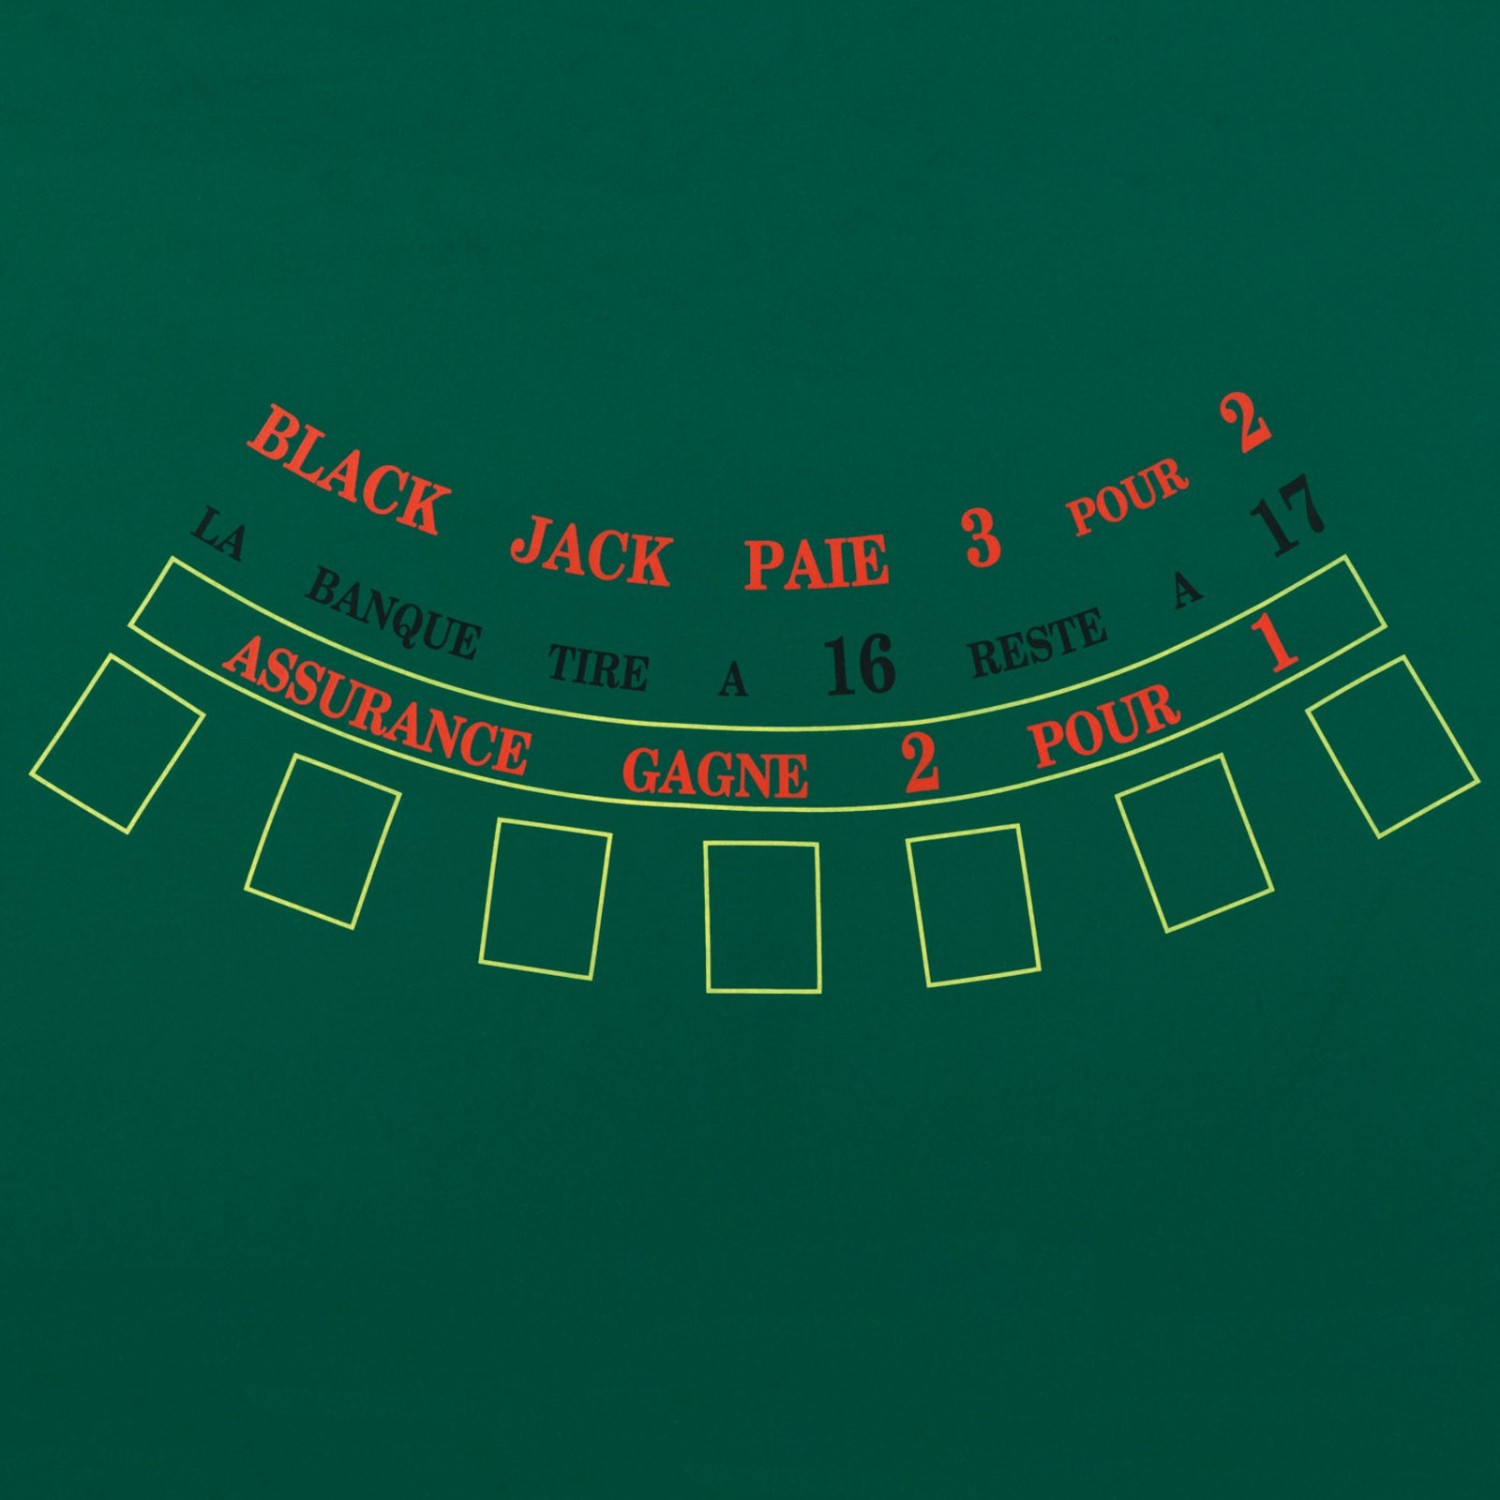 Blackjack, un jeu que j’ai appris à manier tout récemment